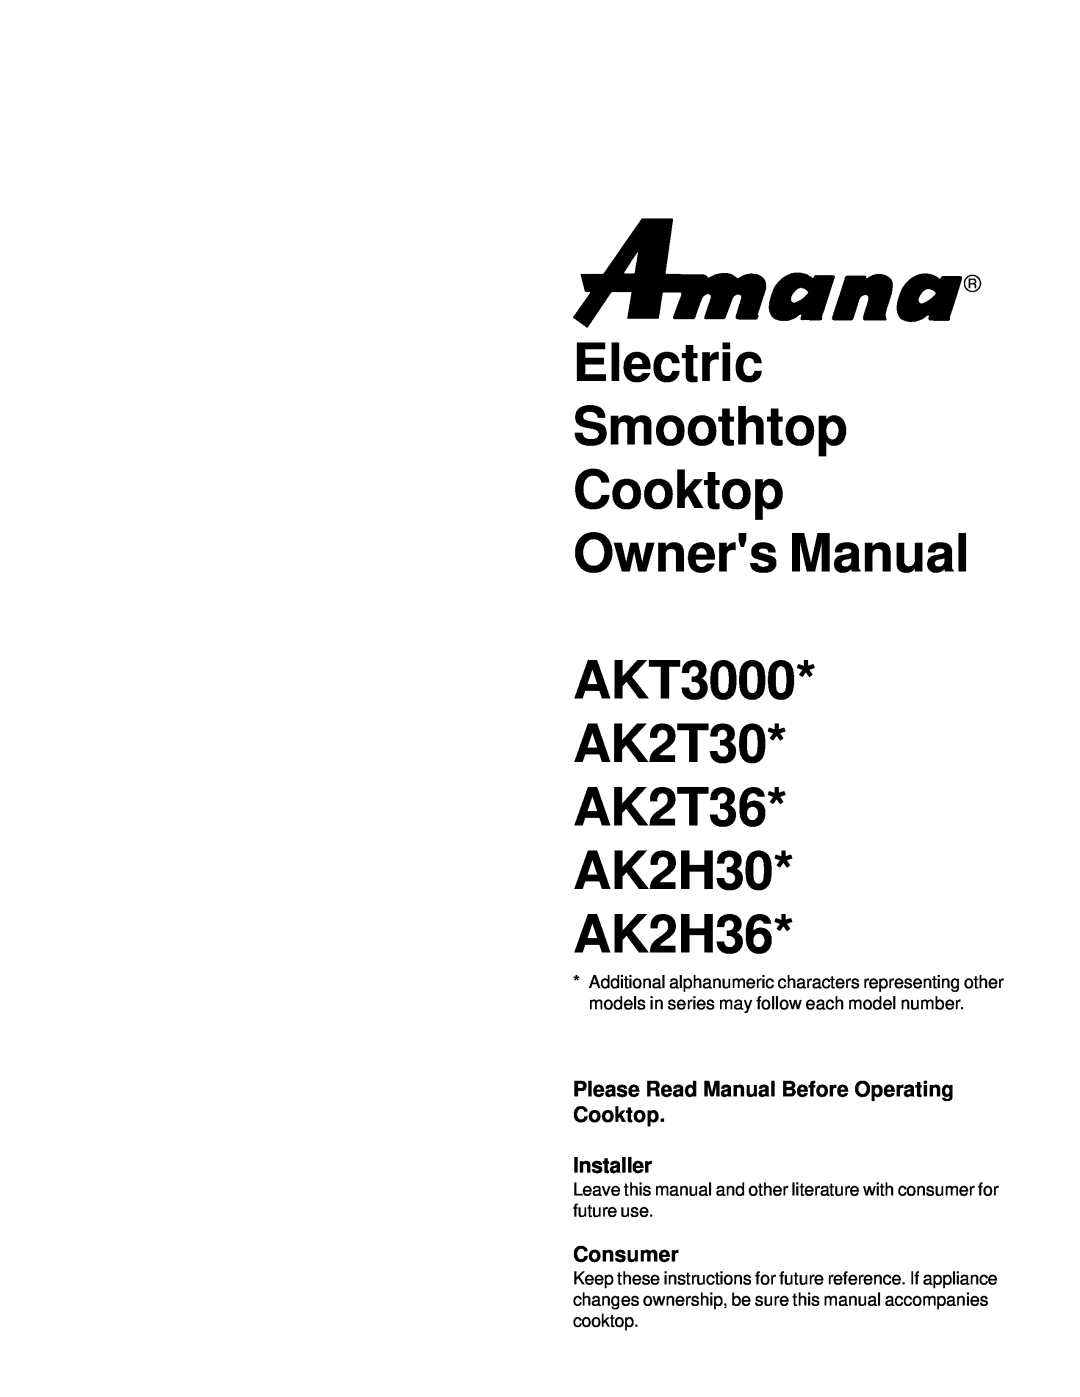 Amana owner manual Please Read Manual Before Operating Cooktop, Installer, Consumer, AK2T30 AK2T36 AK2H30 AK2H36 